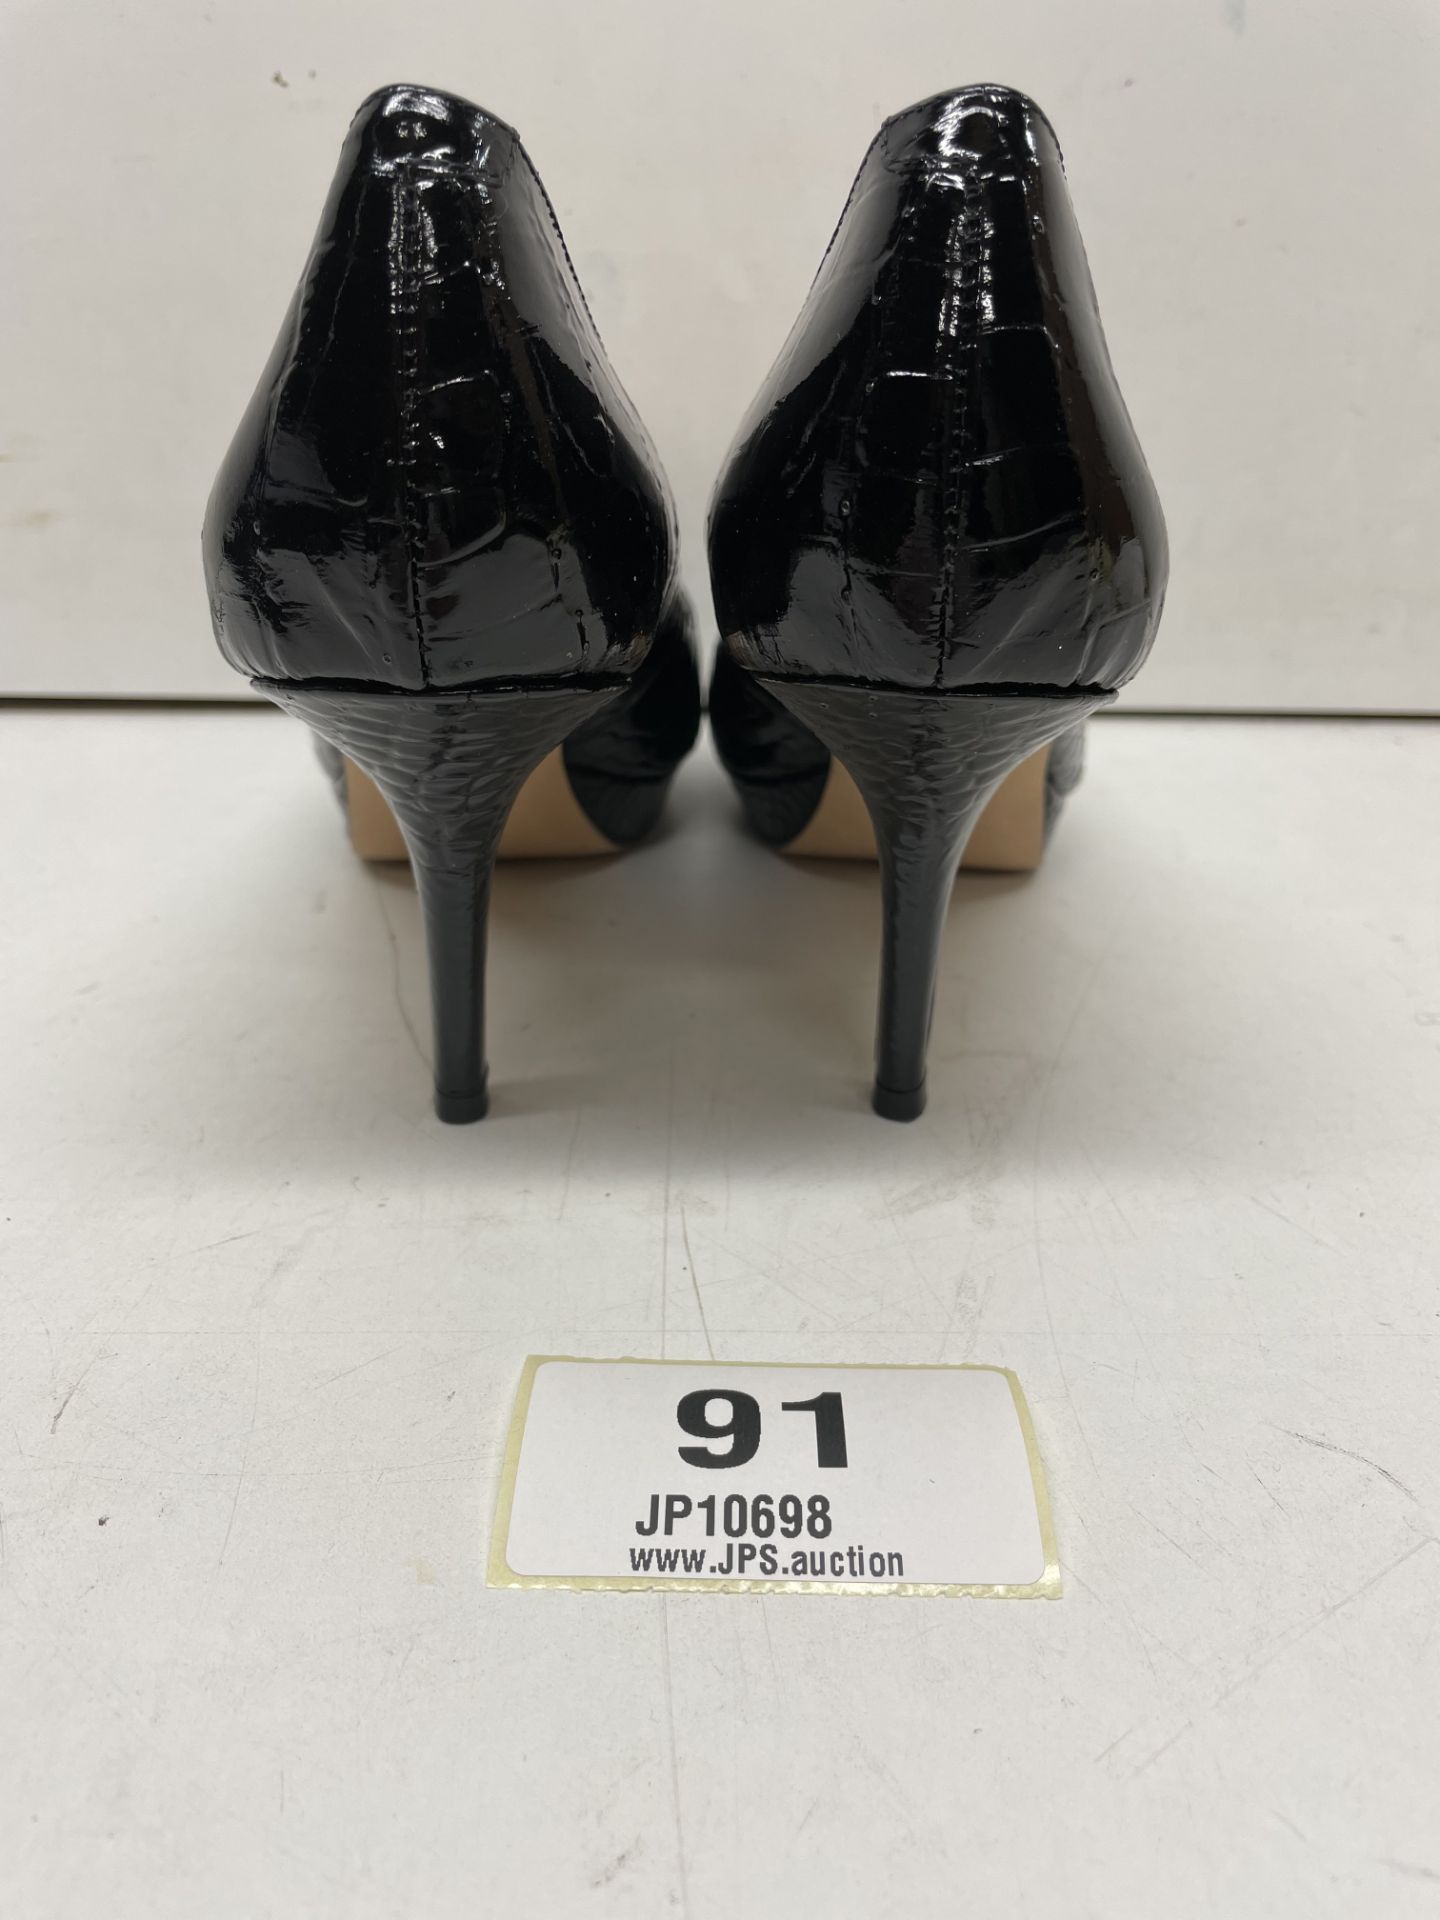 Ex-Display Lucy Choi Peep Toe Platform Heels | Eur 37 - Image 3 of 4